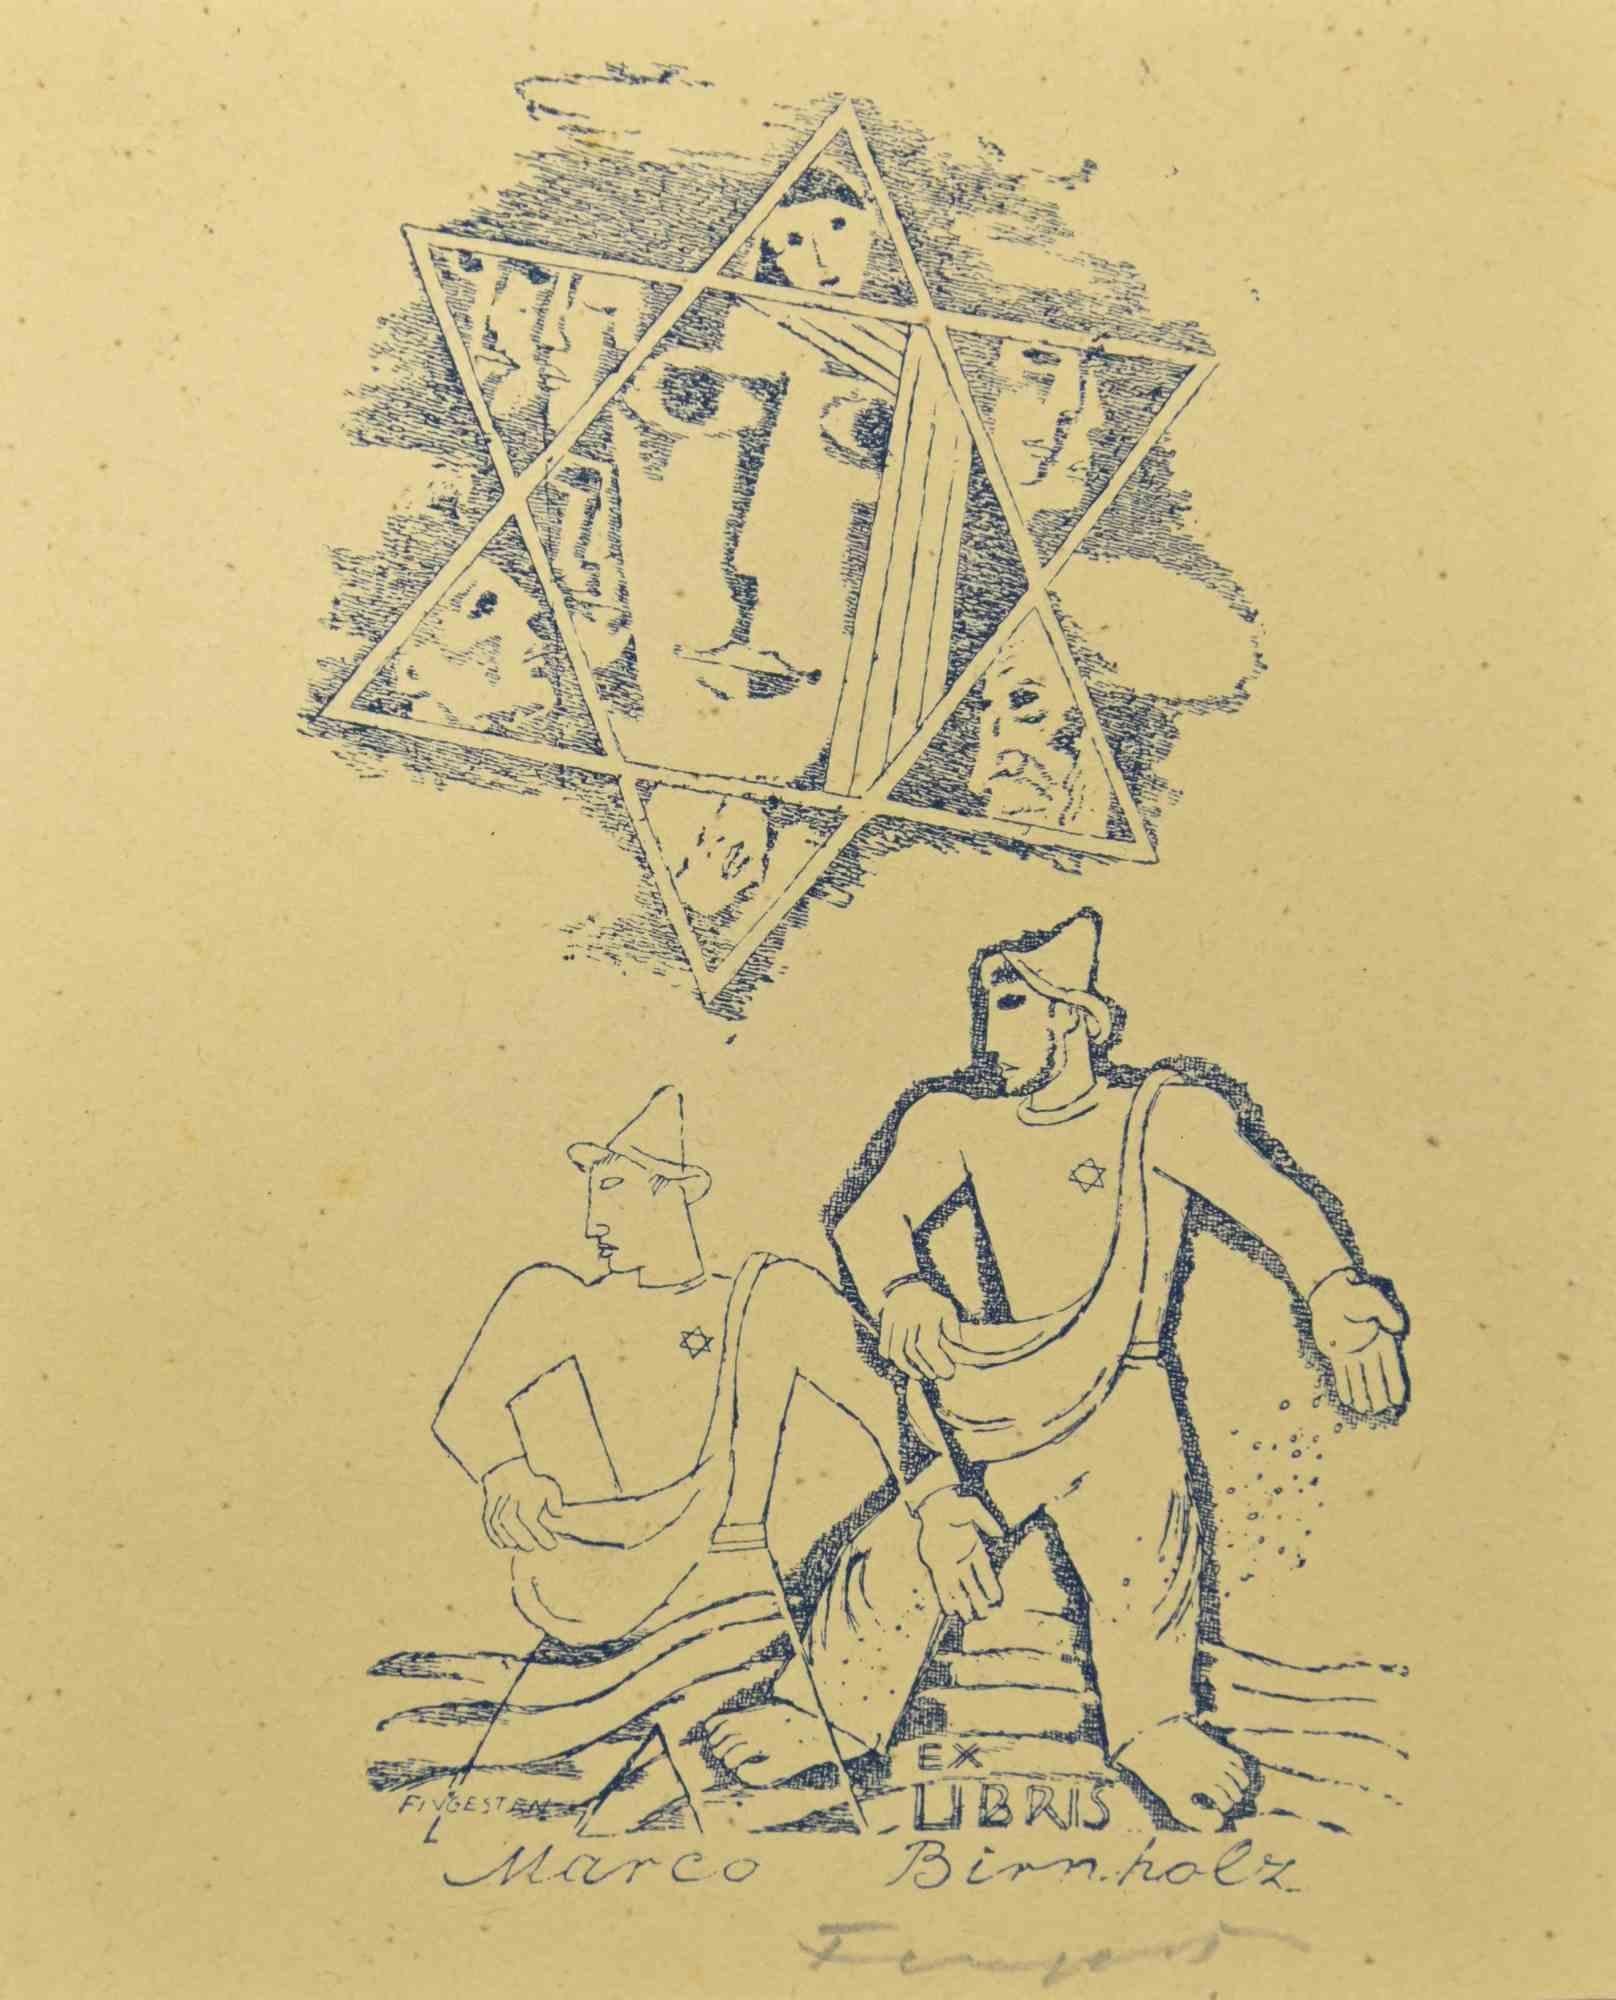 Ex Libris - Marco Binnholz - Woodcut by Michel Fingesten - 1930s